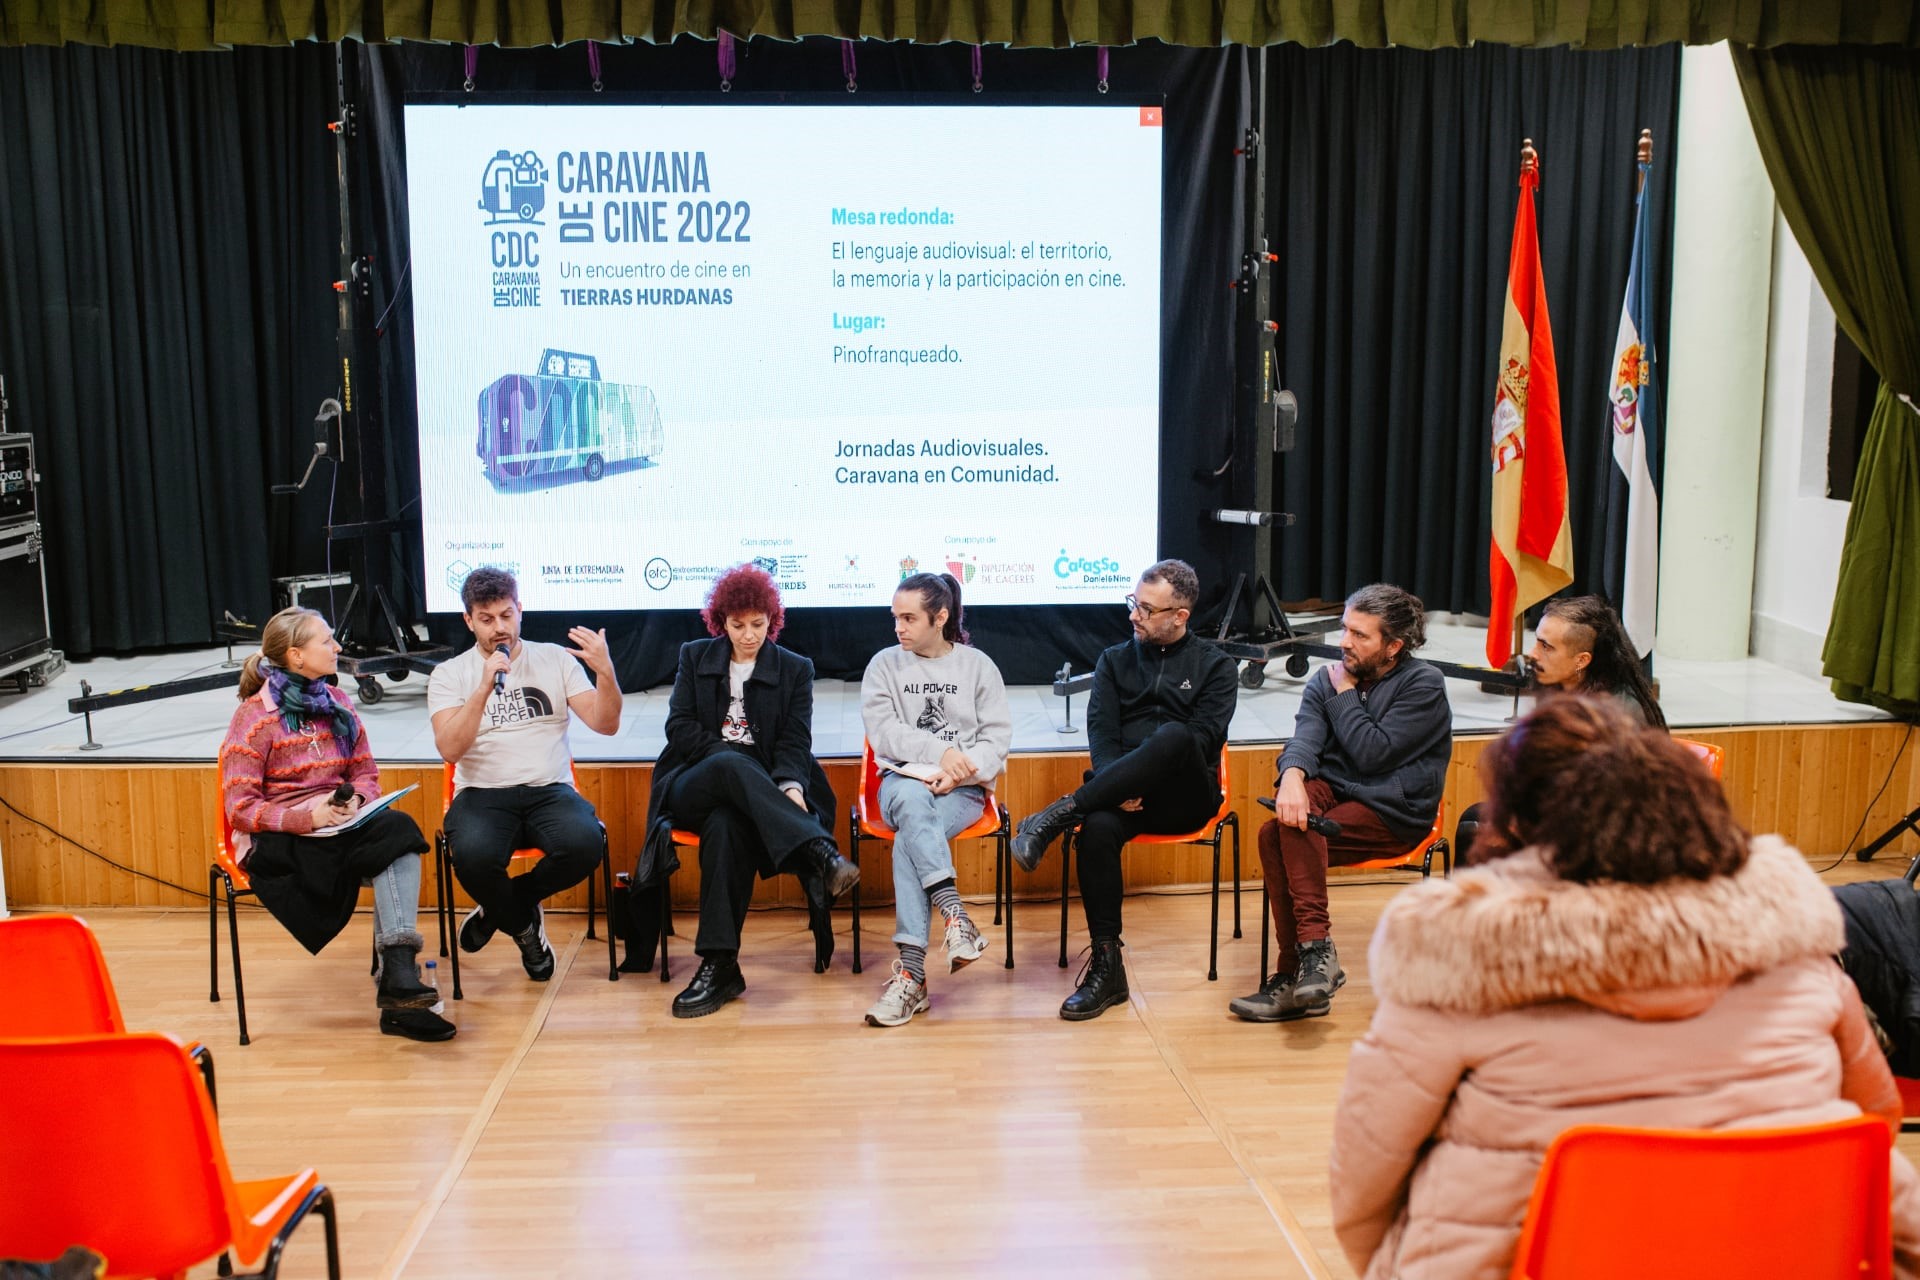 El Proyecto Caravana de Cine Ciudadana inició su andadura por Las Hurdes el en el marco de unas jornadas audiovisuales para técnicos, instituciones y comunidad educativa